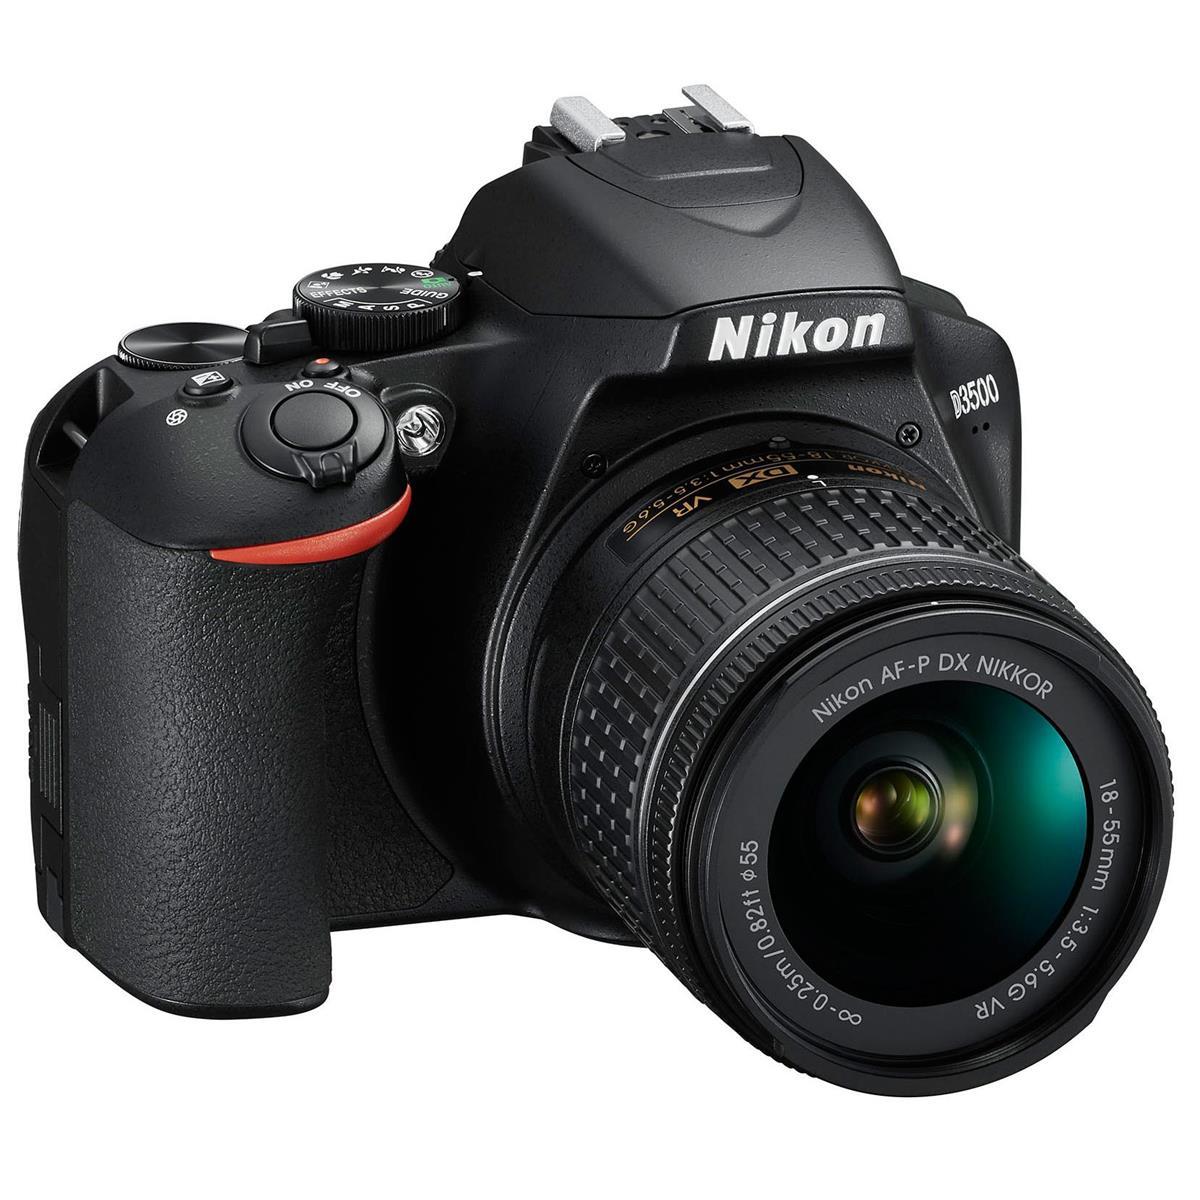 Nikon D3500 24MP DSLR Camera, AF-P DX NIKKOR 18-55mm f/3.5-5.6G VR Lens, Black